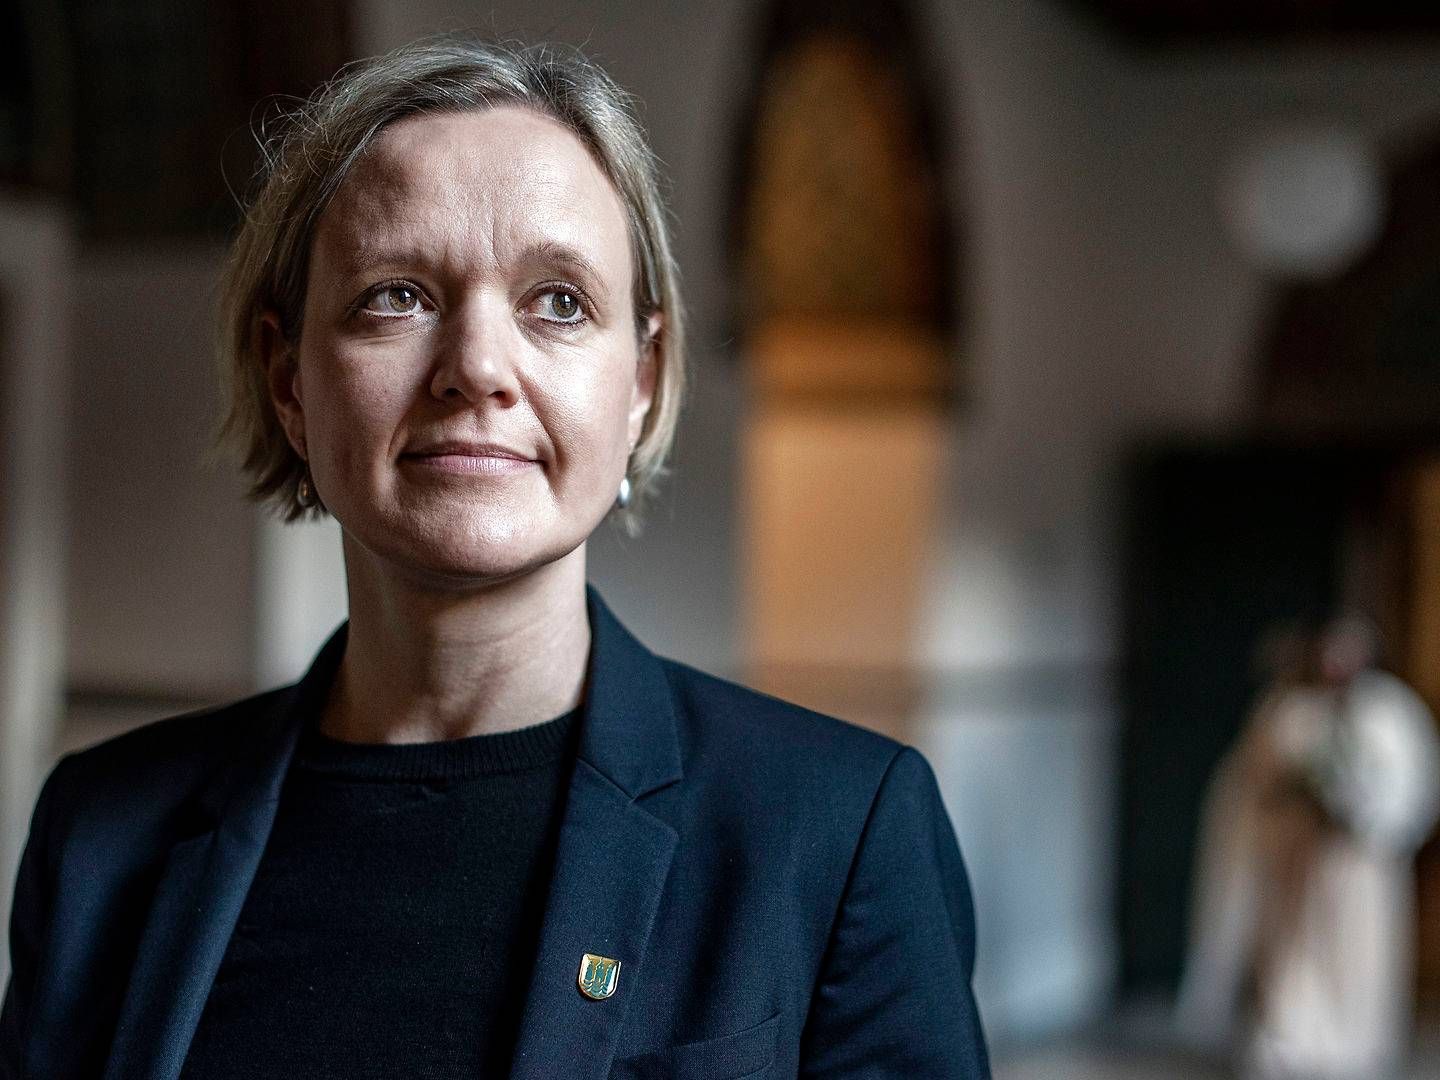 Beskæftigelses- og integrationsborgmester i Københavns Kommune, Cecilia Lonning-Skovgaard. | Foto: Niels Ahlmann Olesen/Ritzau Scanpix